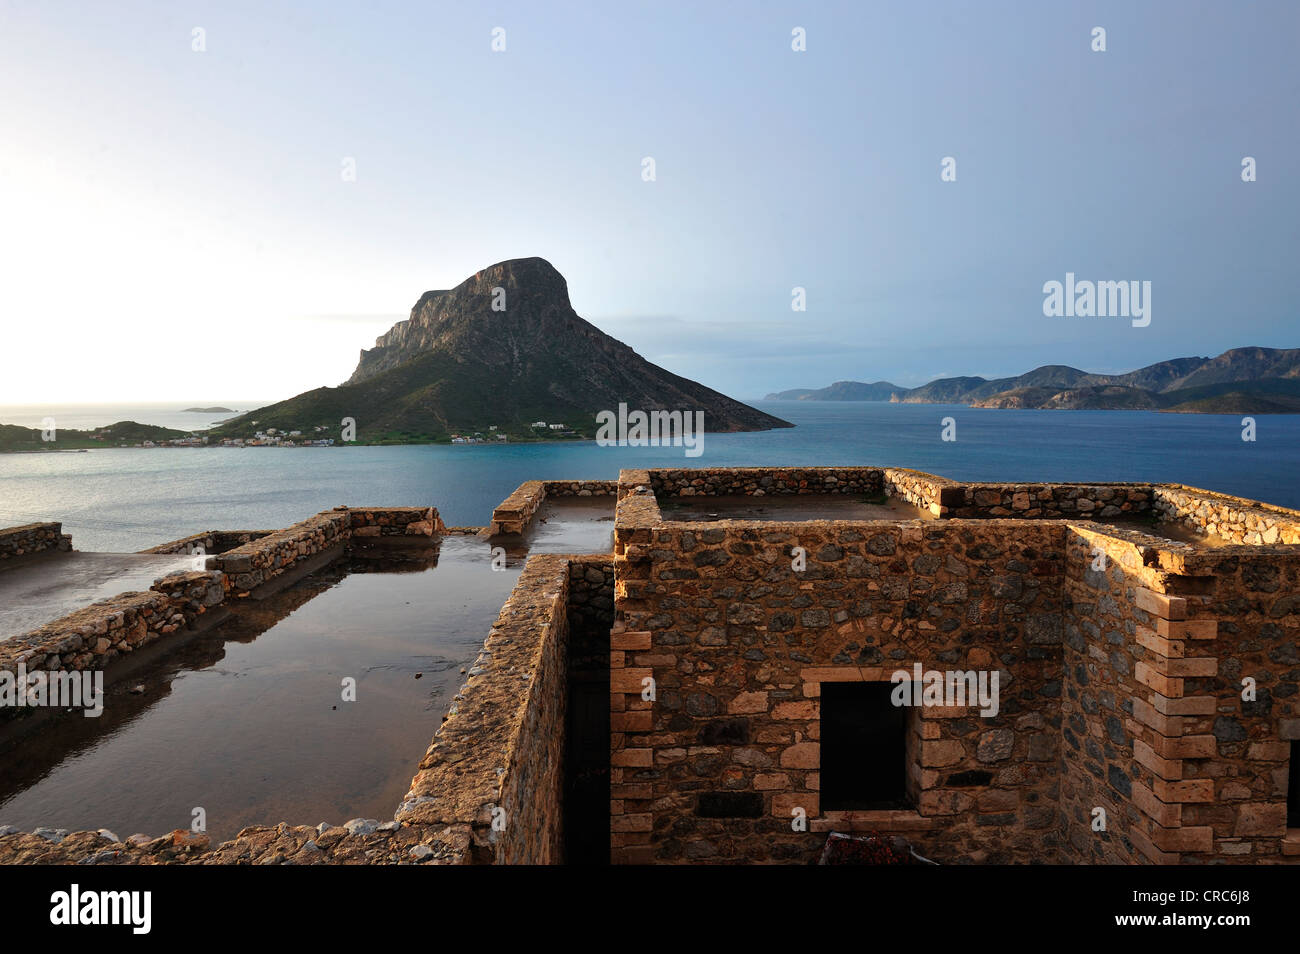 Vue panoramique de l'île grecque de Teledos Banque D'Images